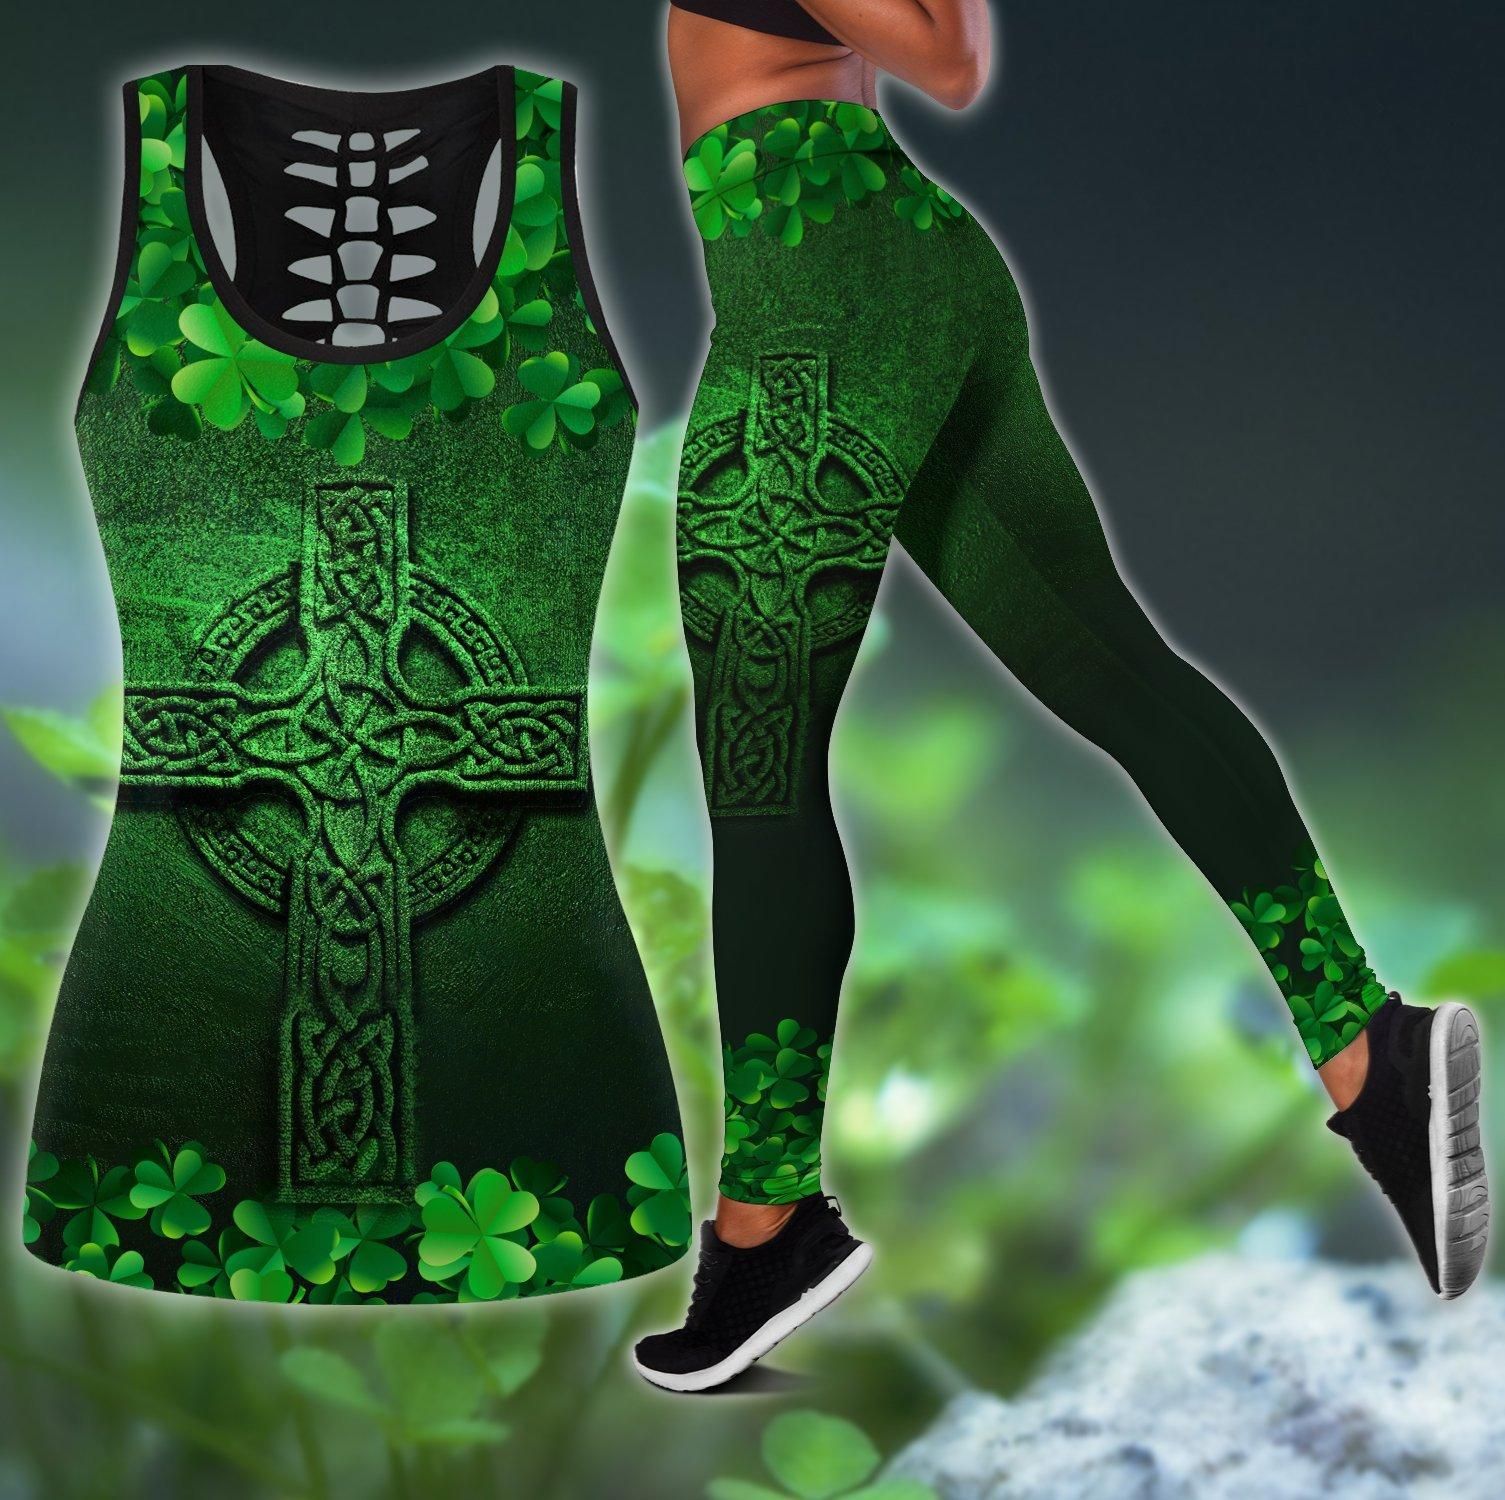 Irish St Patrick's Day Outfit Women's Shamrock Green Legging & Tank Top Set PAN3DSET0310